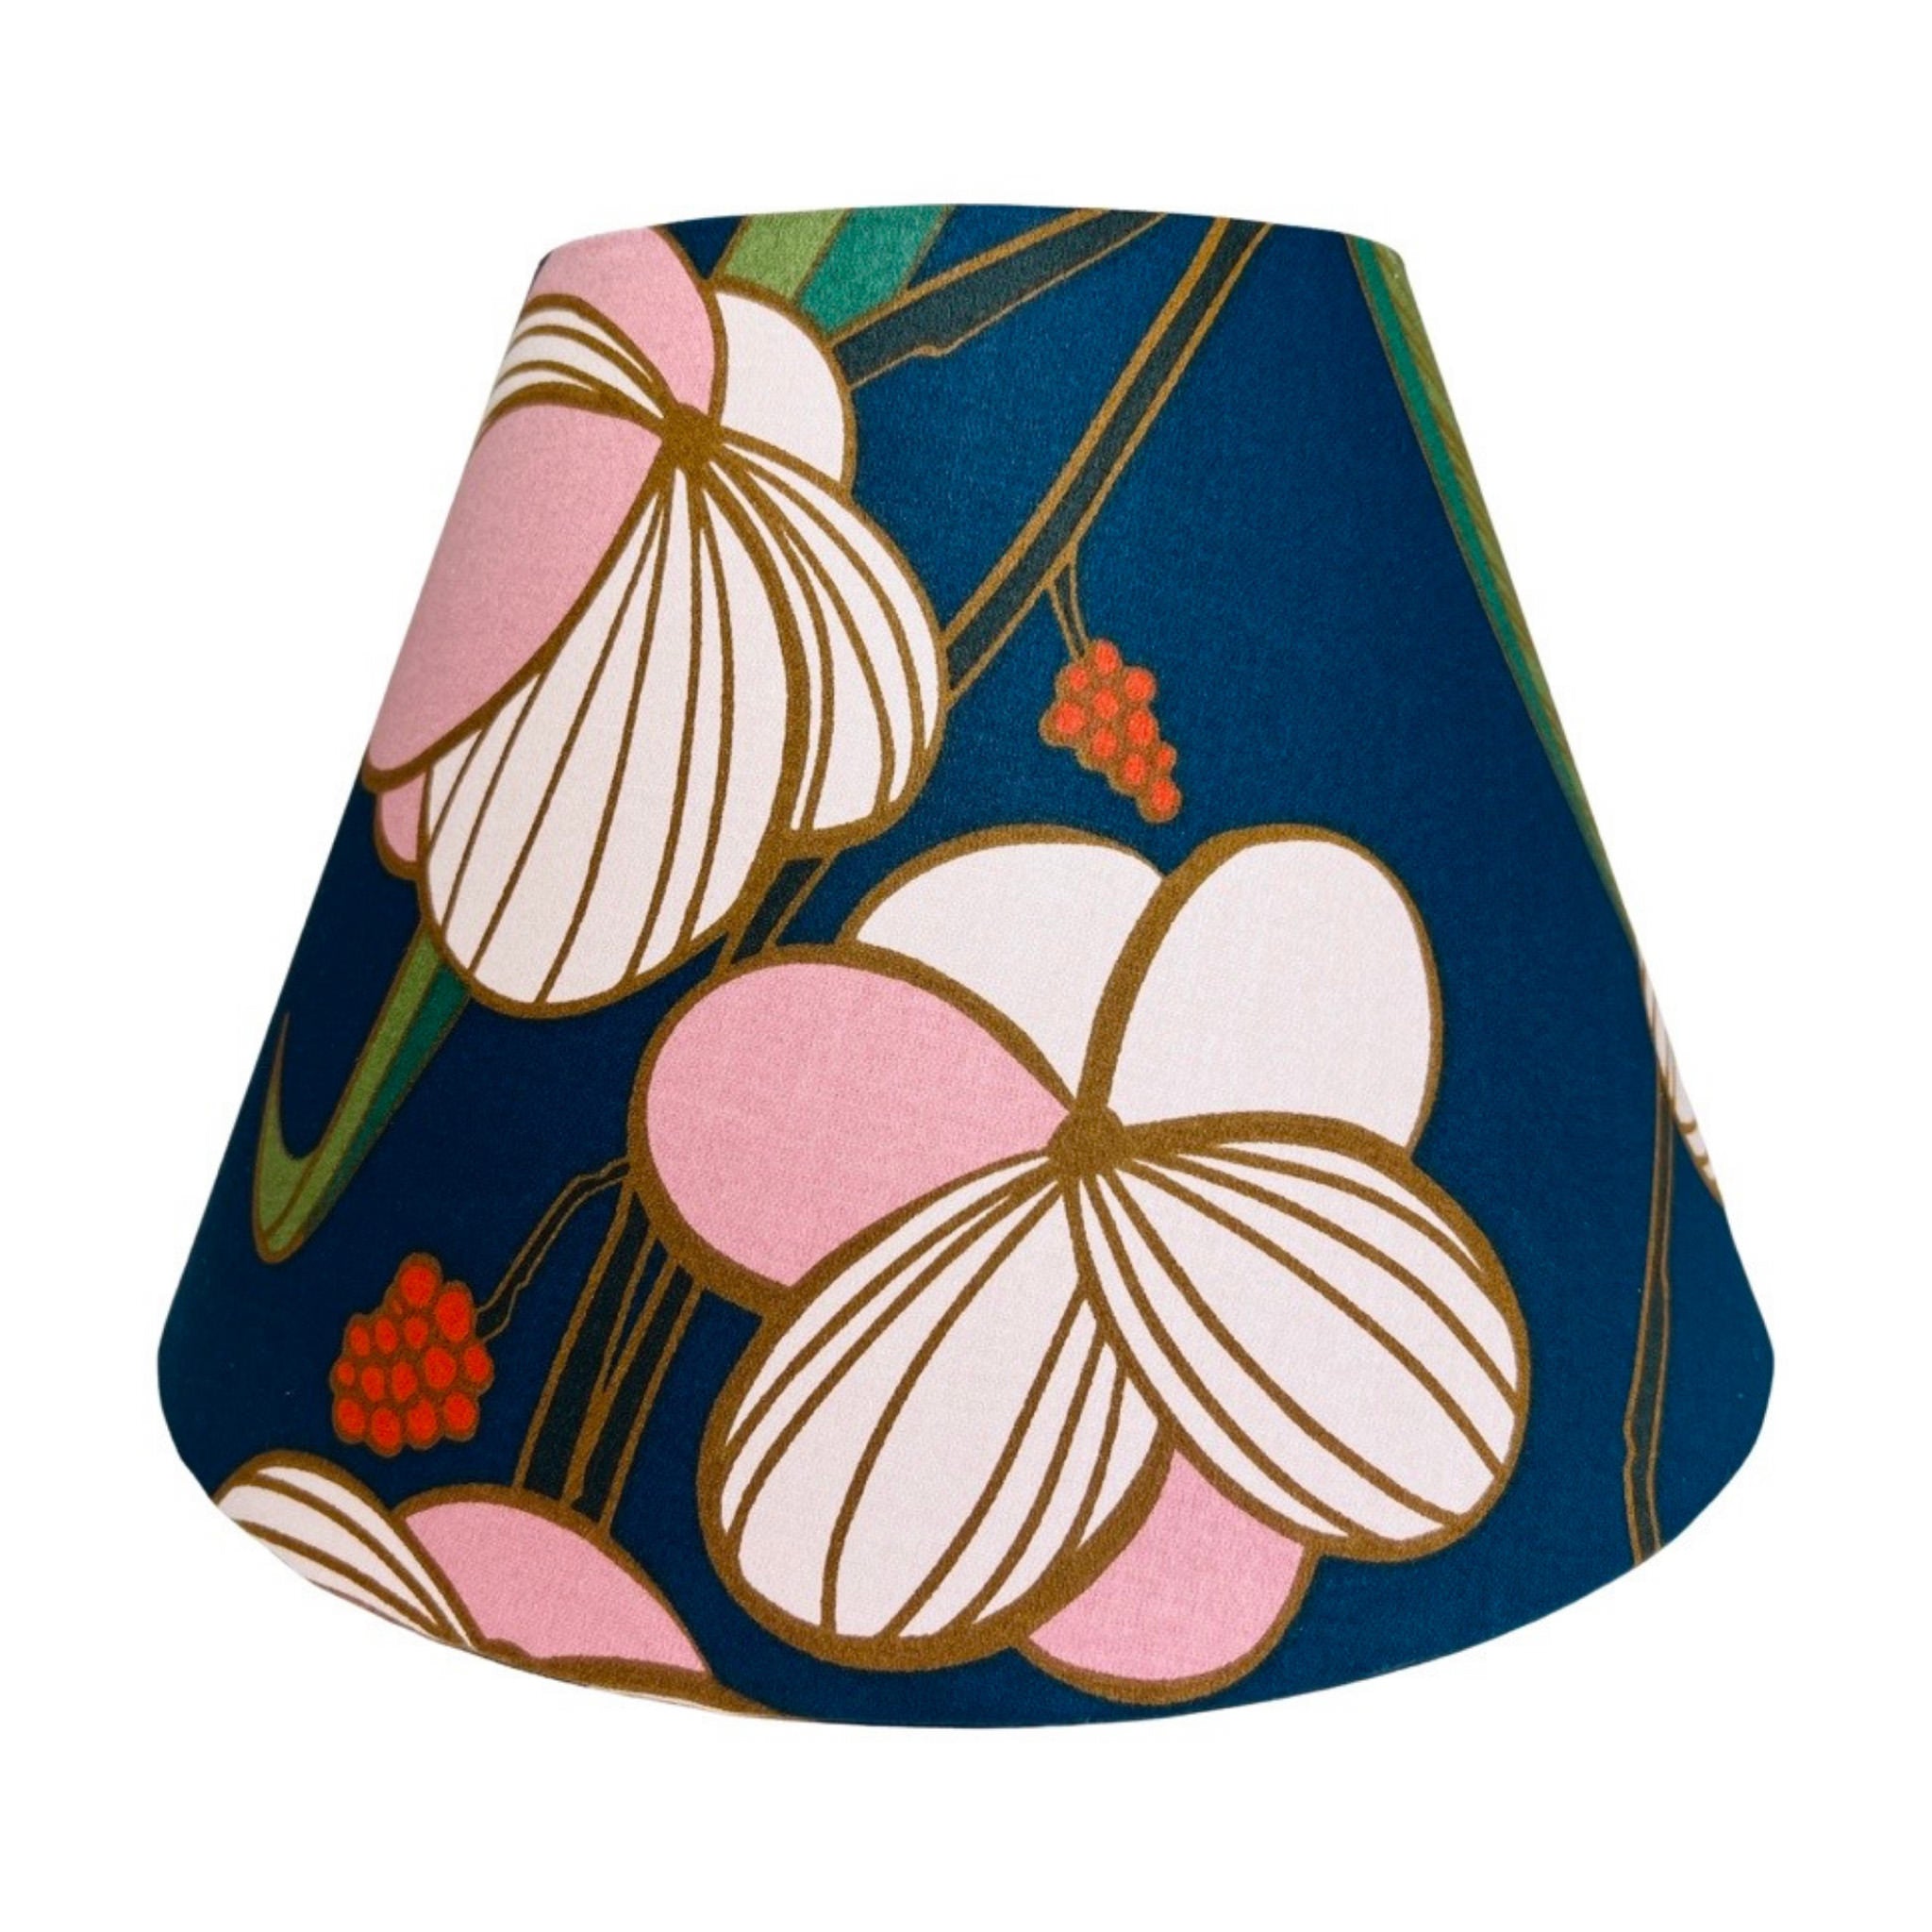 Winona / Blue Abstract Floral Print Empire Lamp Shade